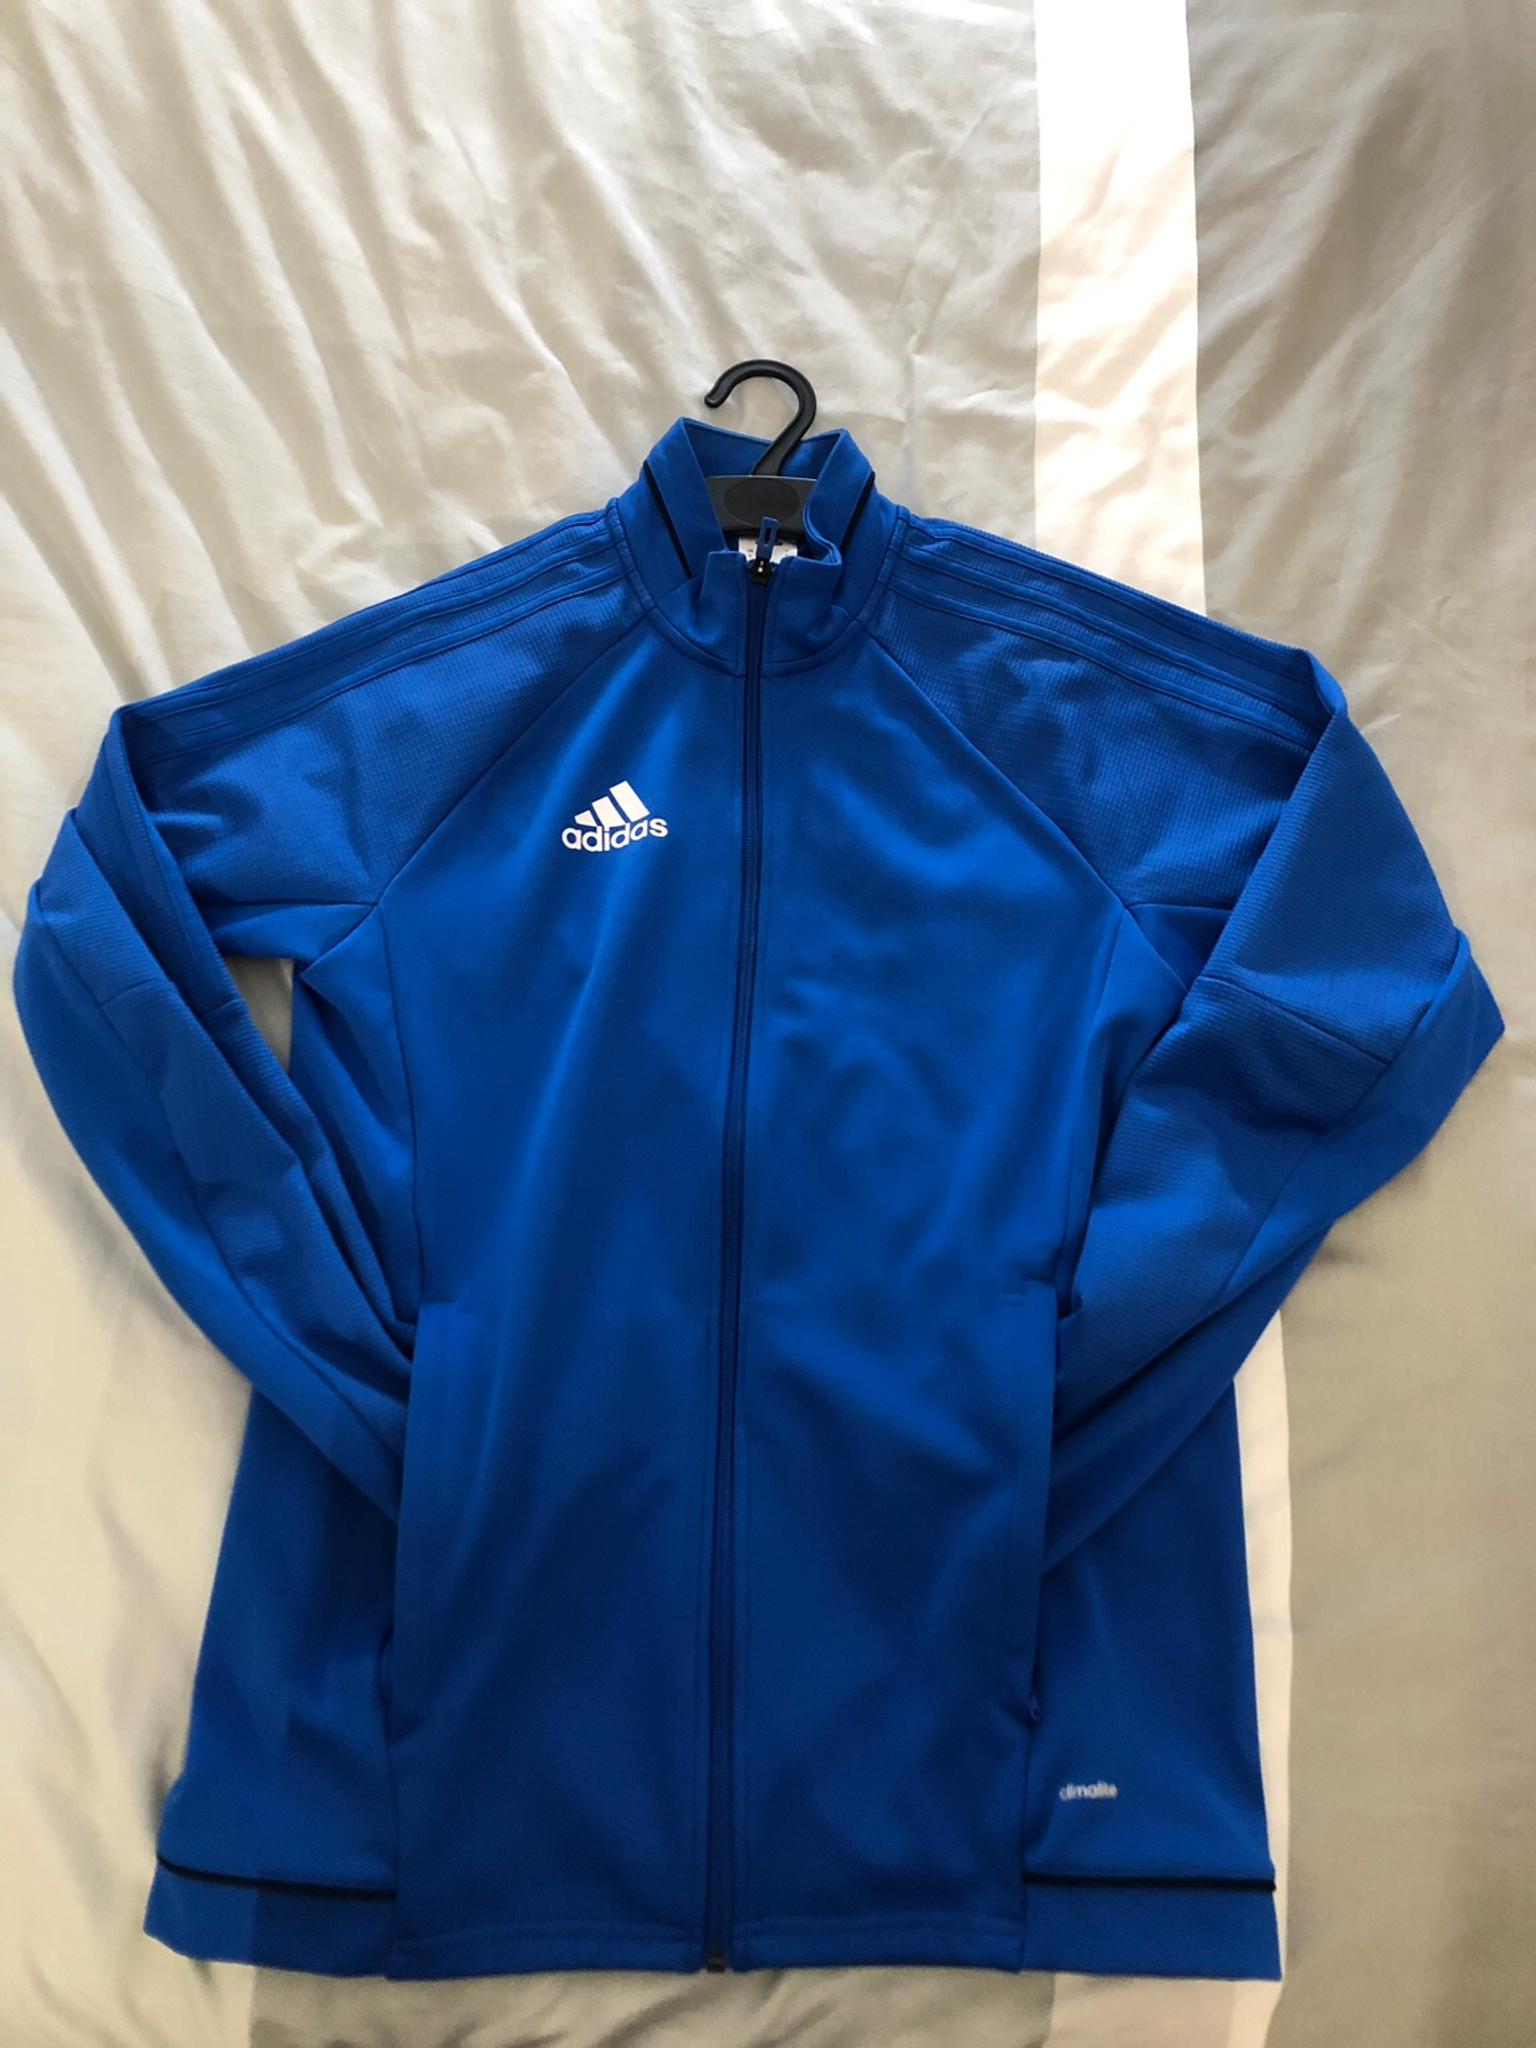 adidas climalite jacket blue